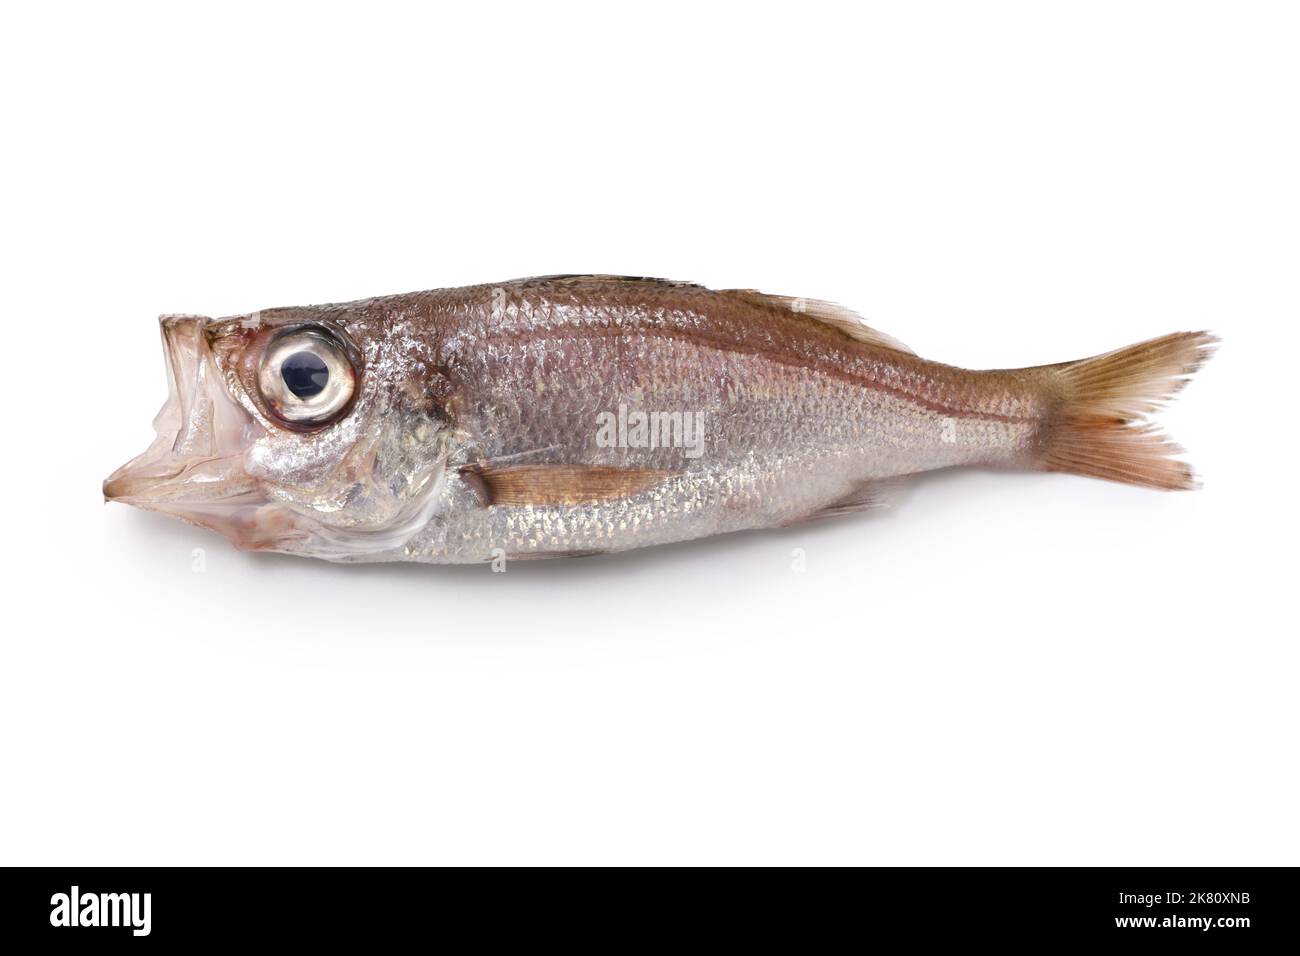 Köstliche Tiefseefische, die noch nicht berühmt sind (silbergrauer Seesaperch), isoliert auf weißem Hintergrund Stockfoto